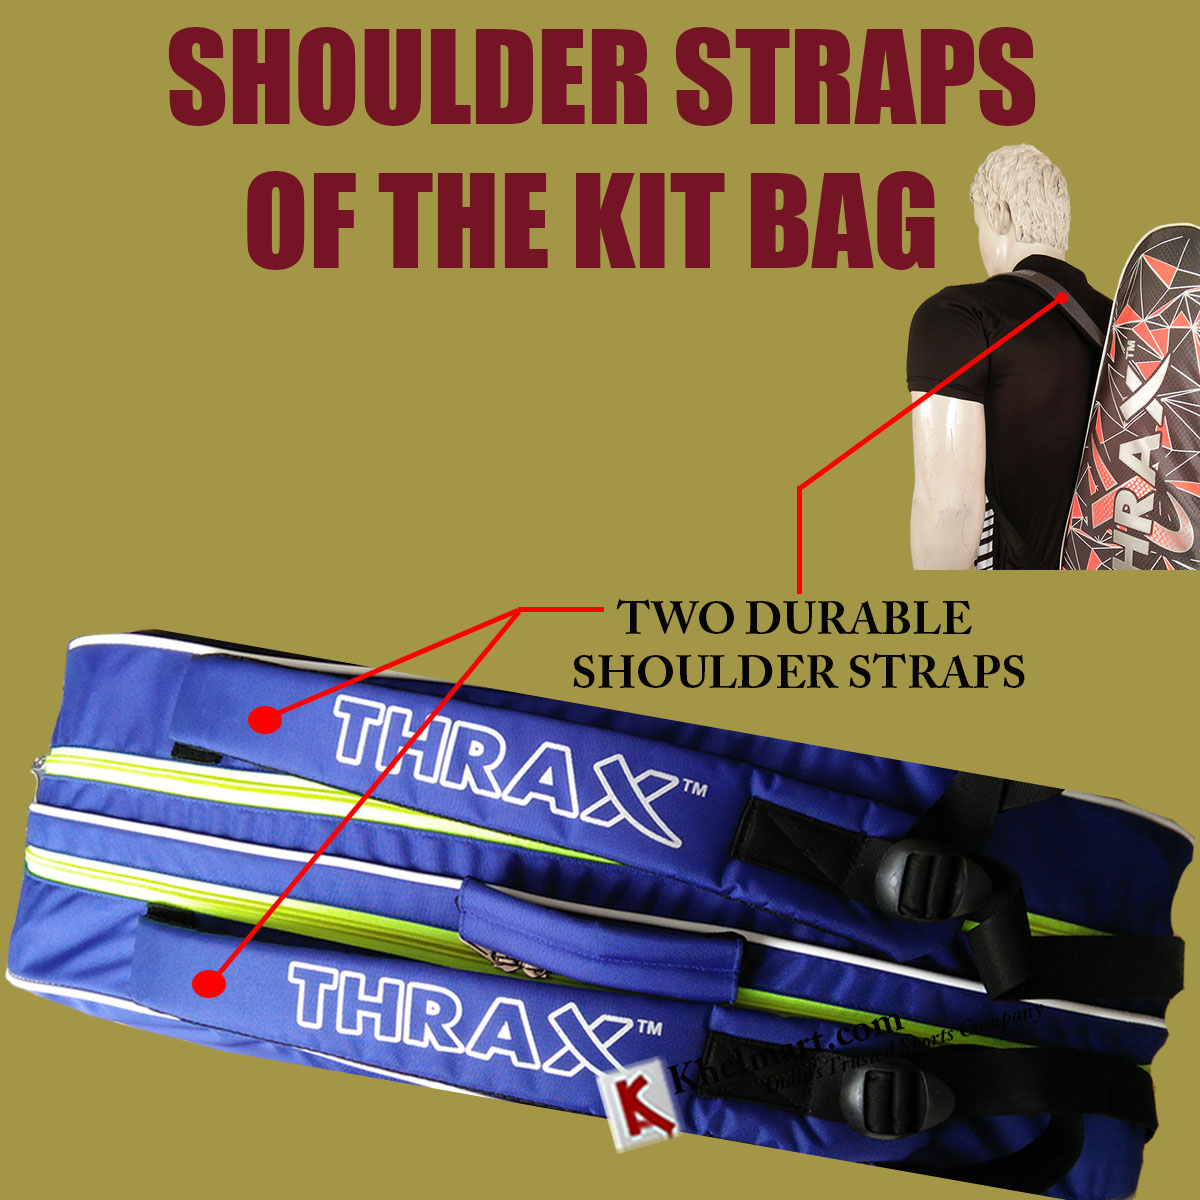 SHOULDER_STRAPS_OF_THE_KIT_BAG.jpg